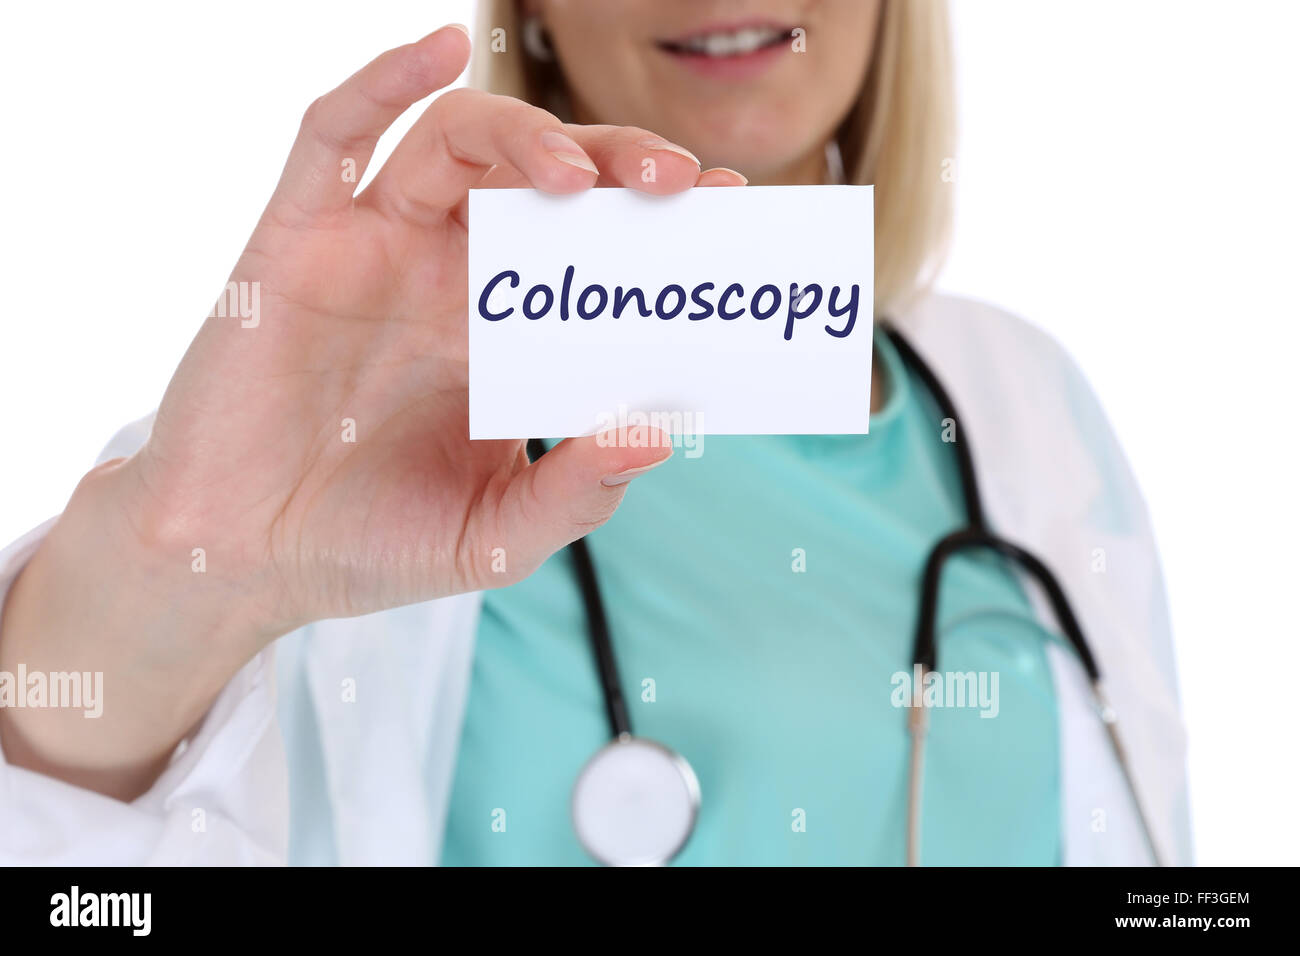 Koloskopie Krebsprävention screening-Check-Up Krankheit krank Krankheit Krankenschwester Arzt mit Schild Stockfoto